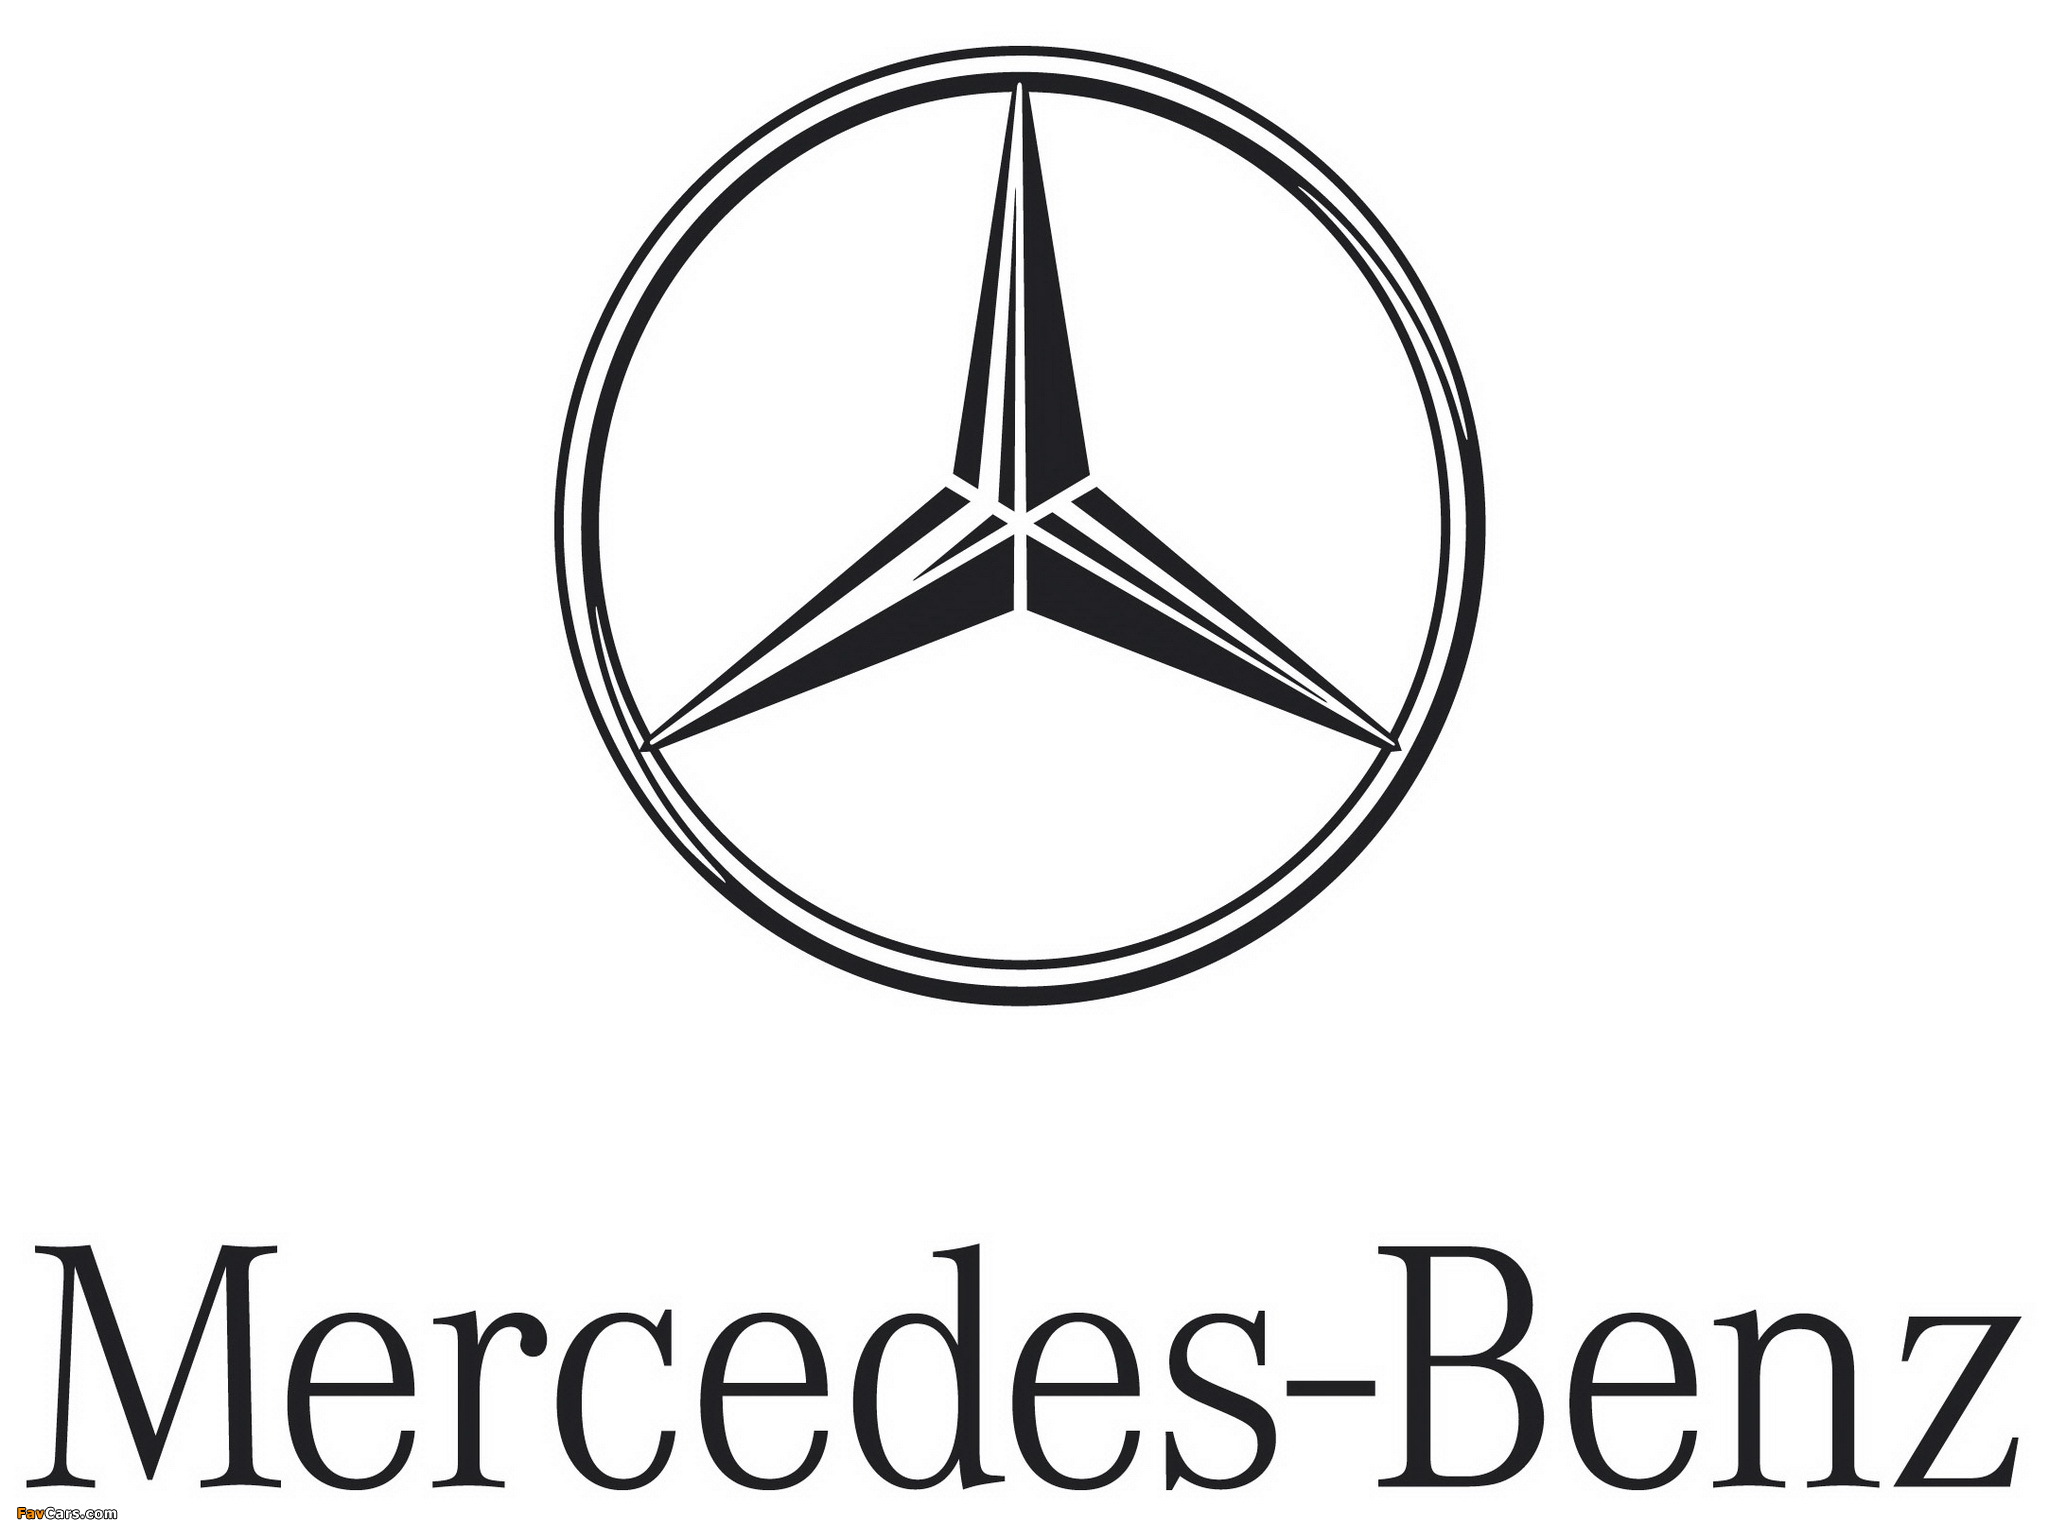 Mercedes-Benz images (2048 x 1536)